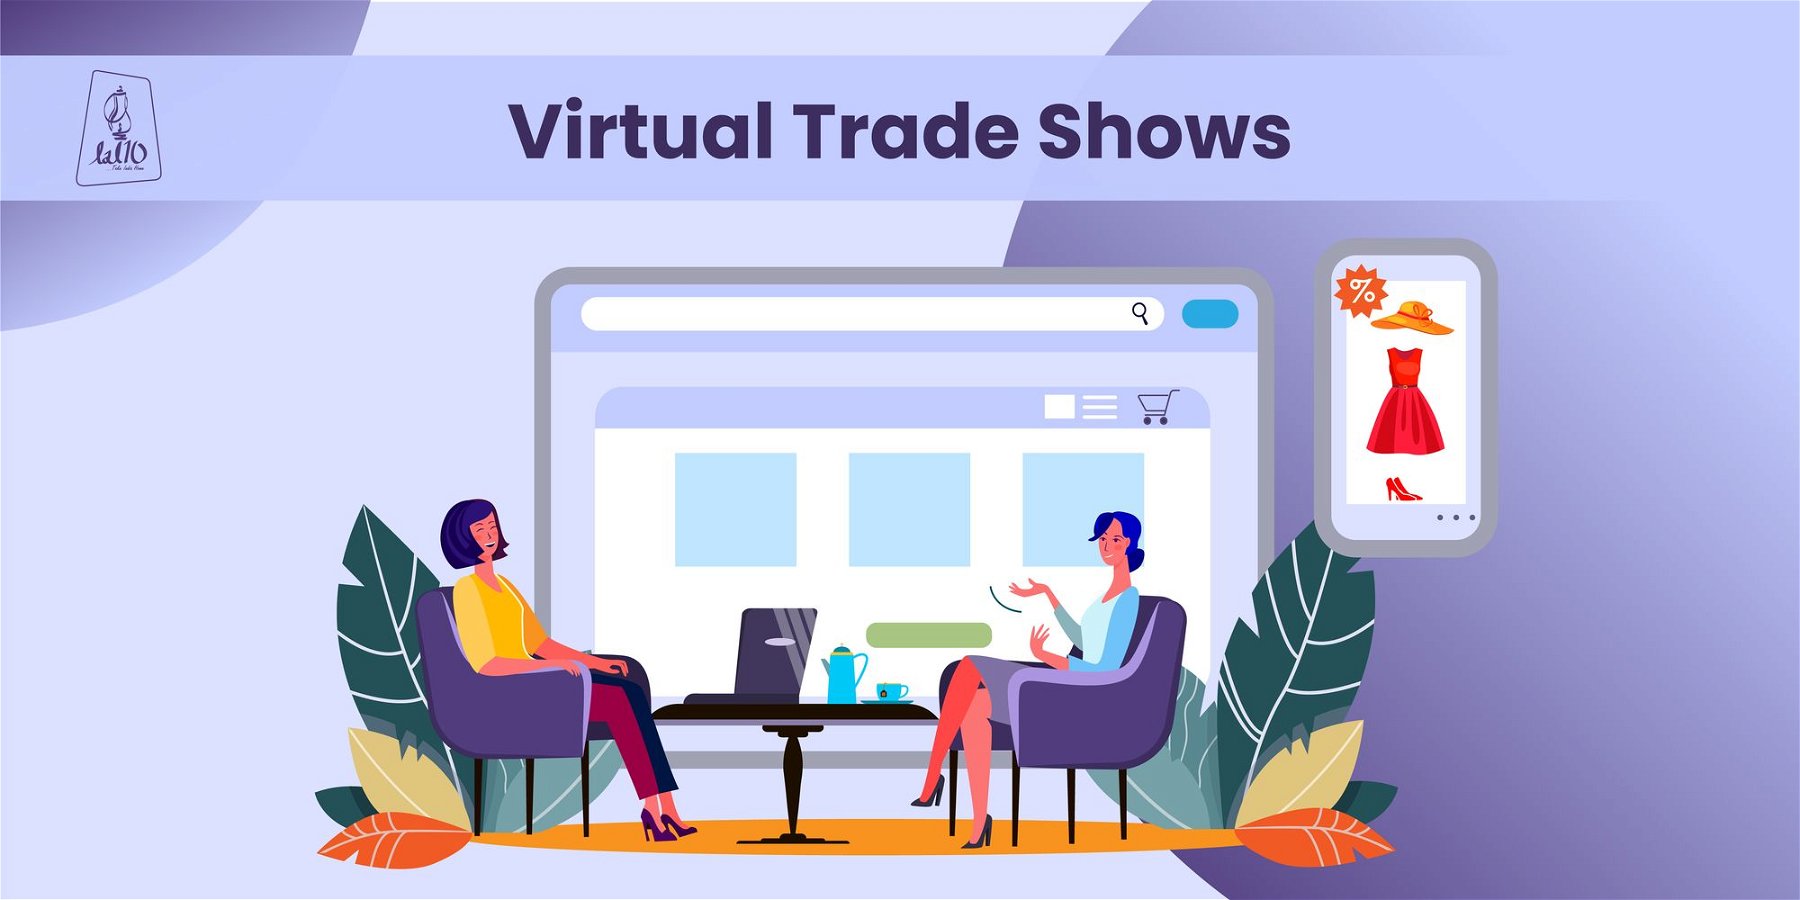 Virtual trade shows